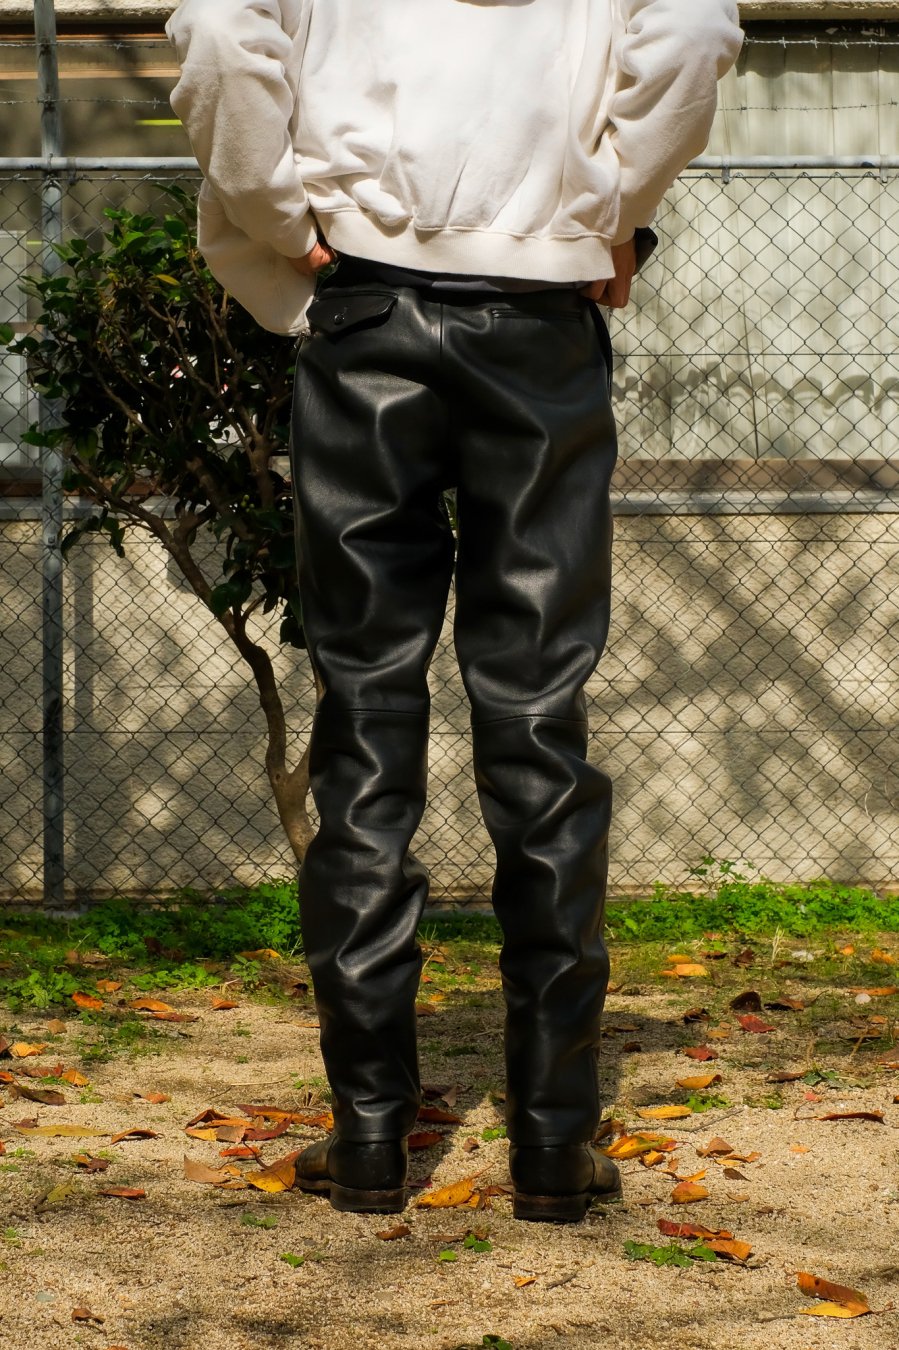 LITTLEBIG Tucked Leather Pants 21aw